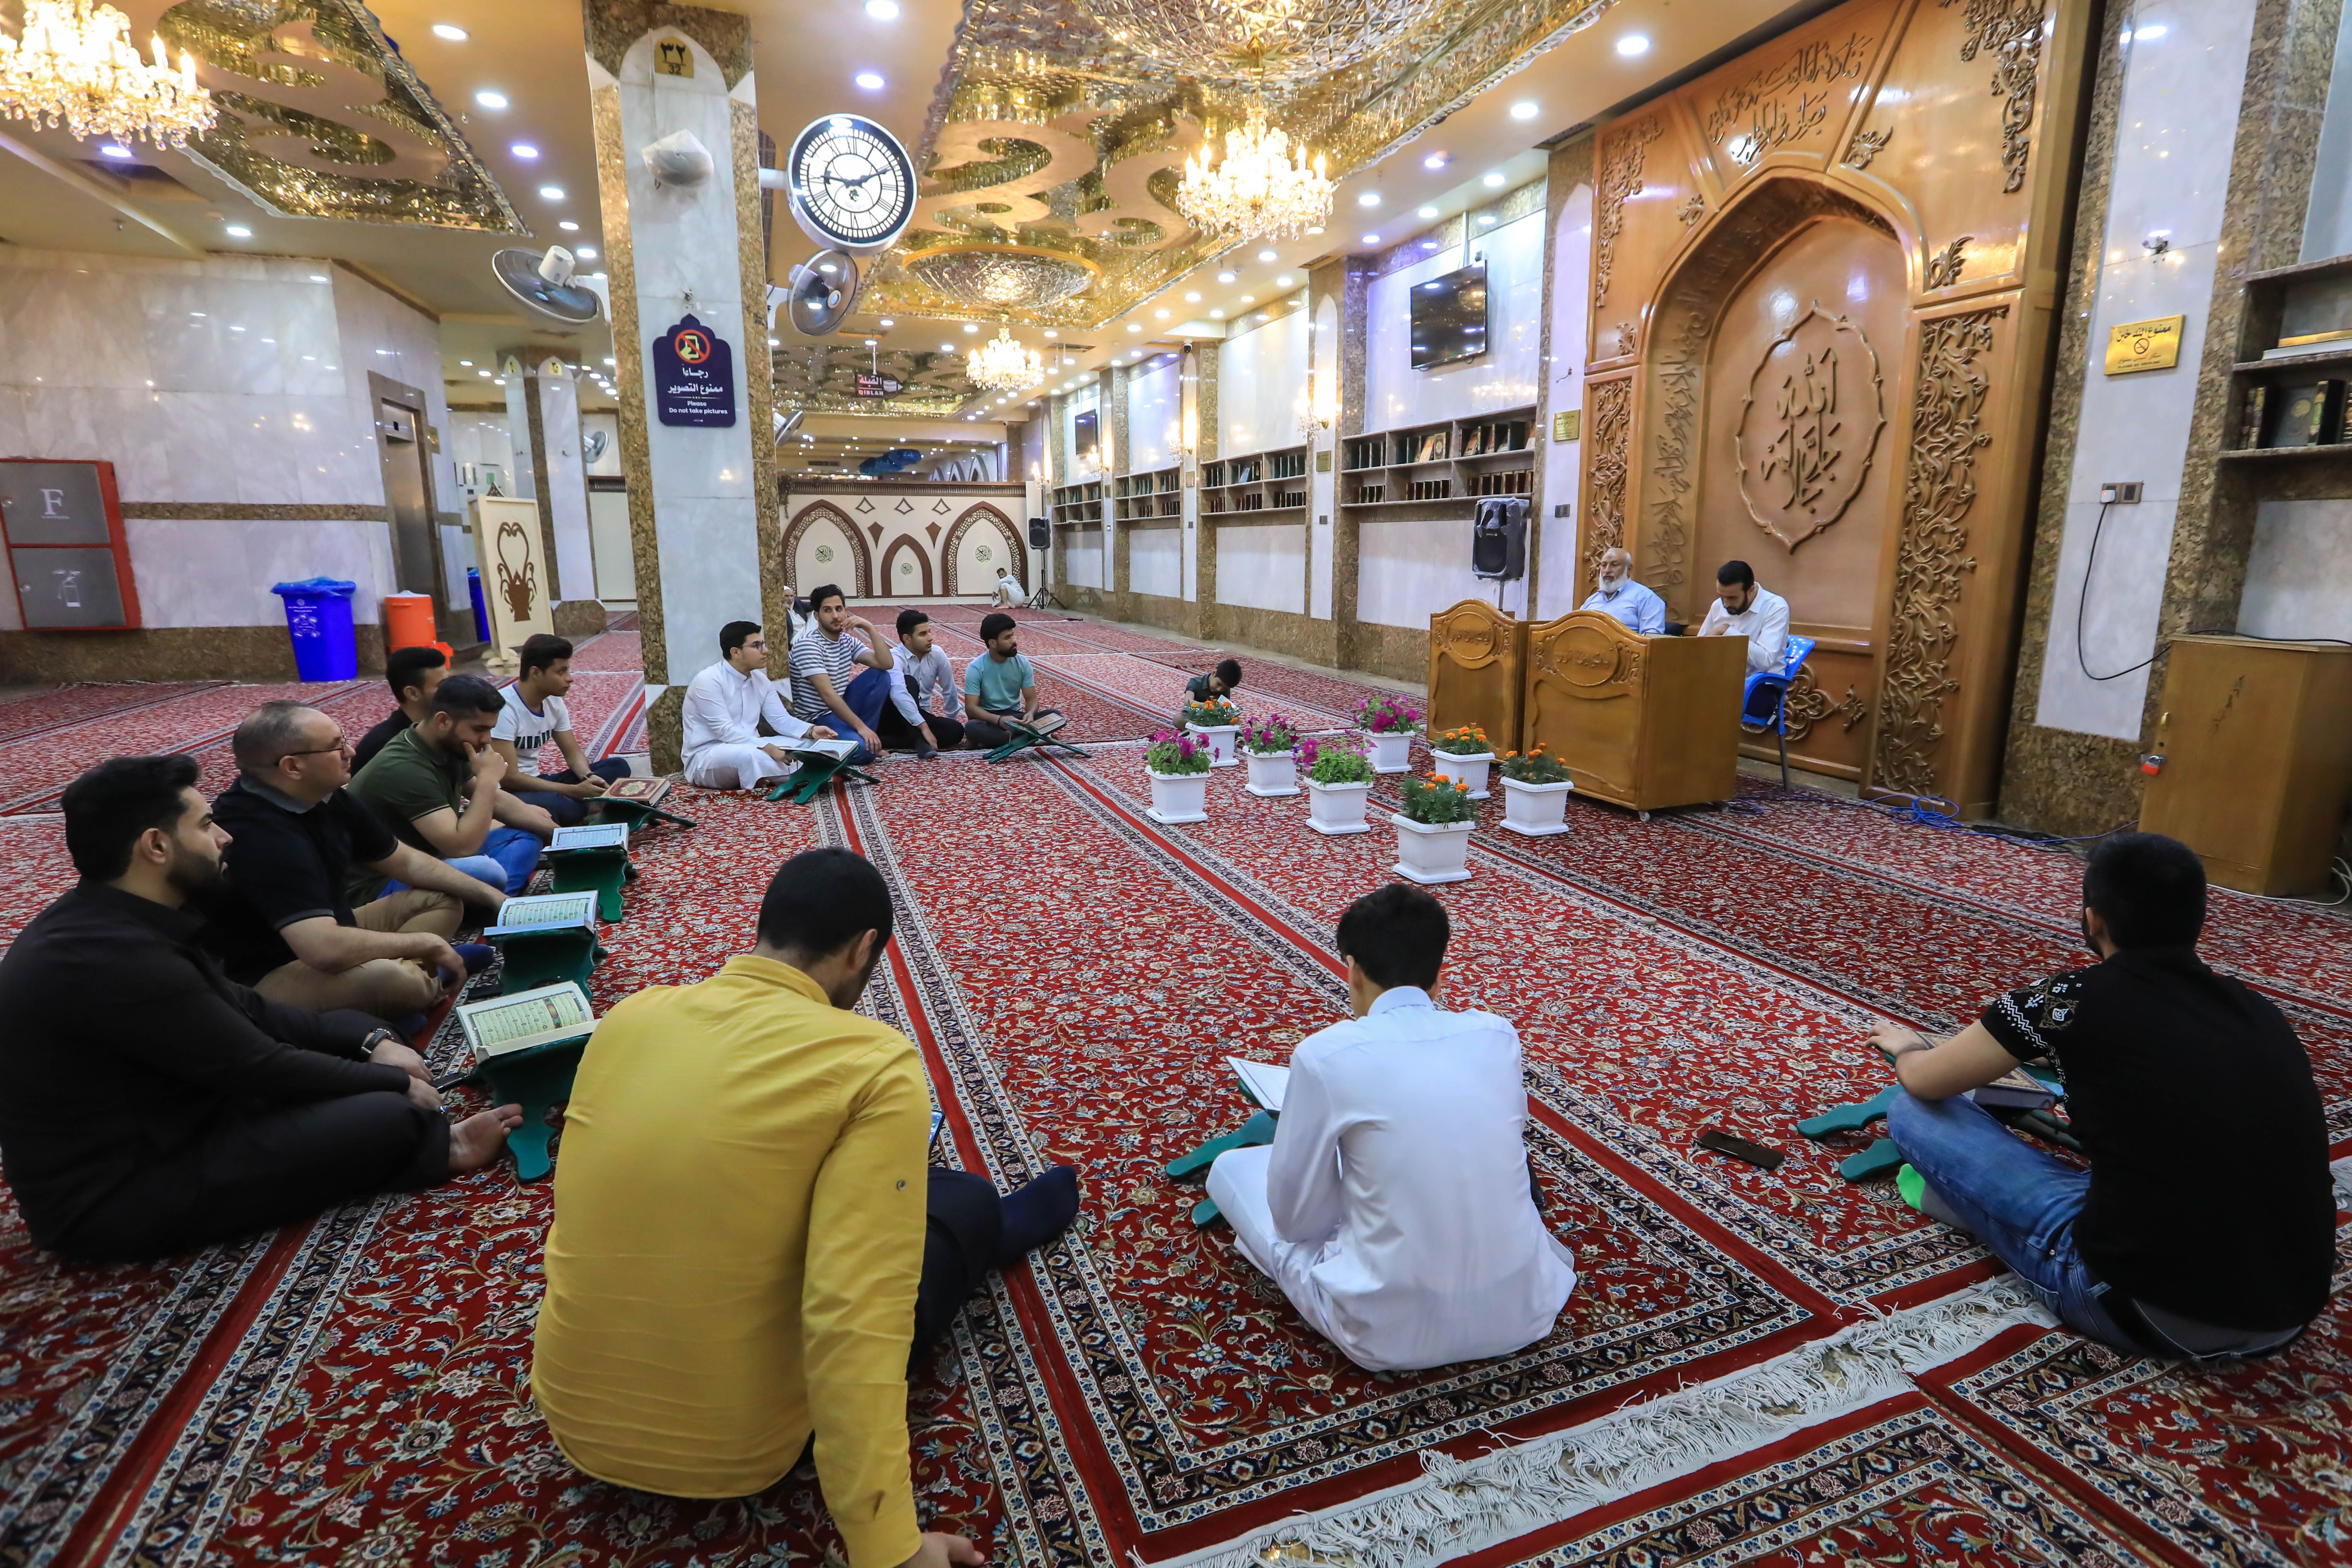 وحدة التلاوة تقيم دورة تطويرية في أحكام التلاوة والنغم القرآني بمشاركة عدد من المتدربين